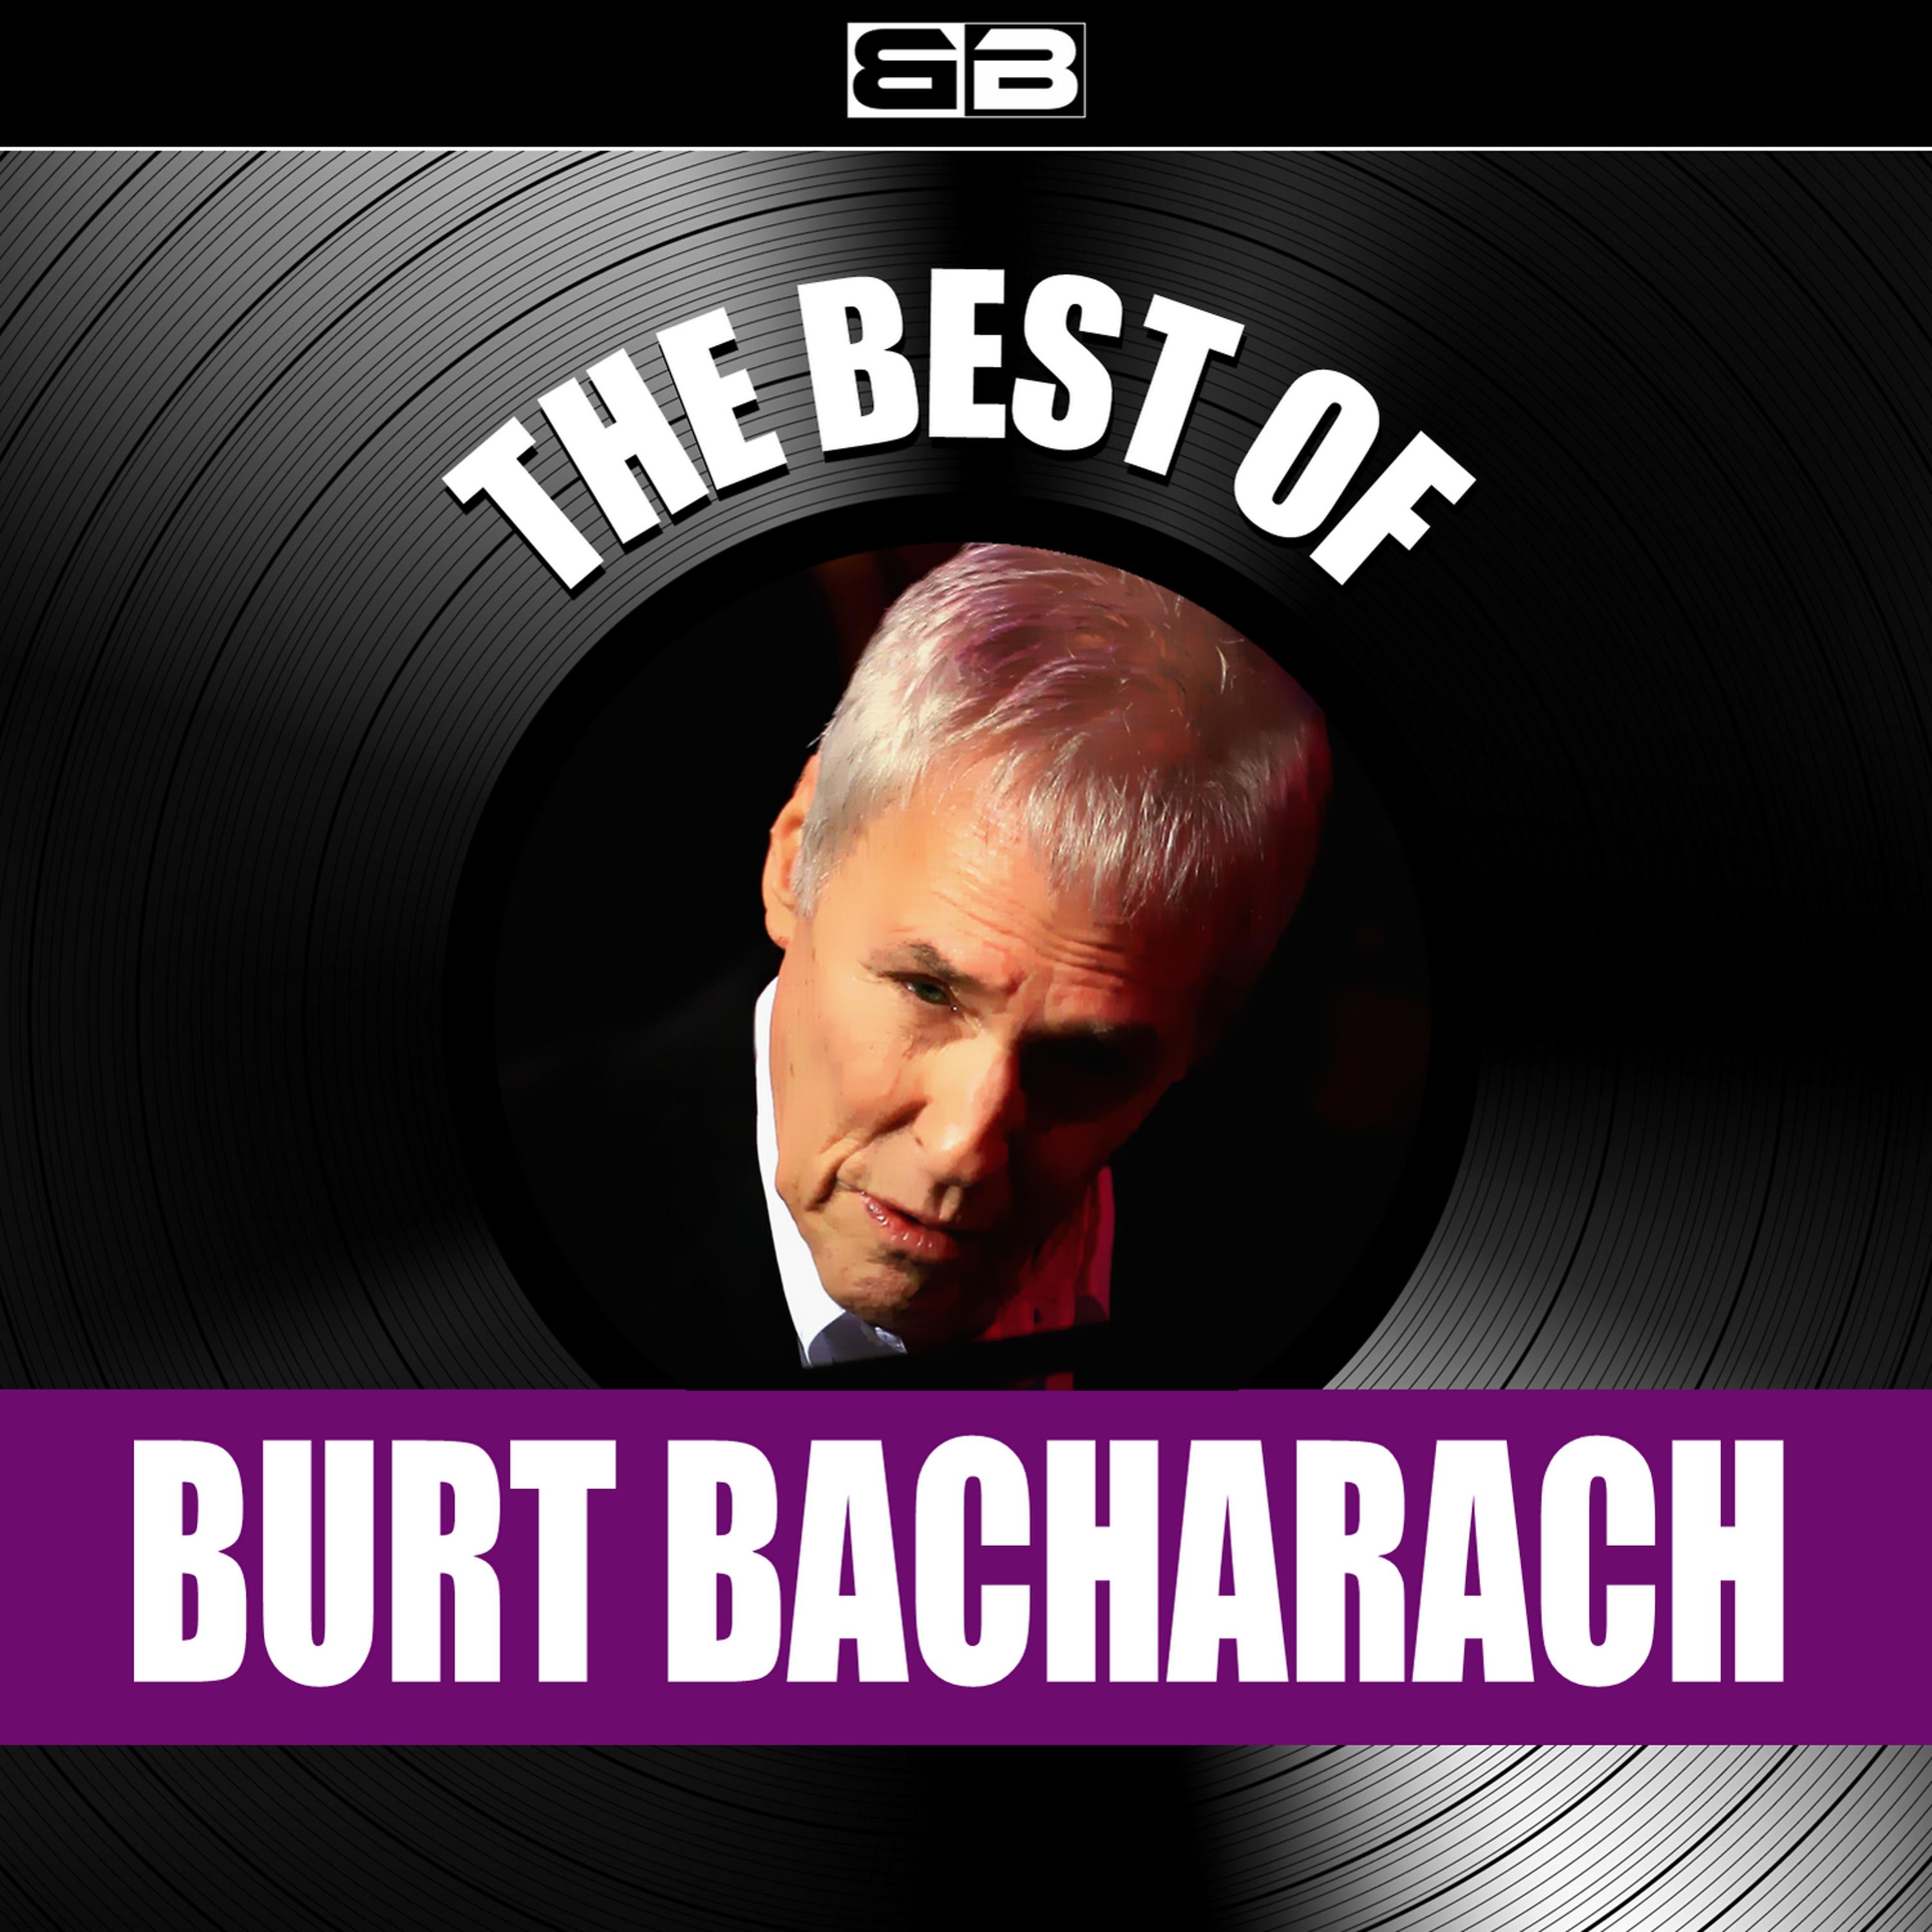 Постер альбома The Magic of Burt Bacharach